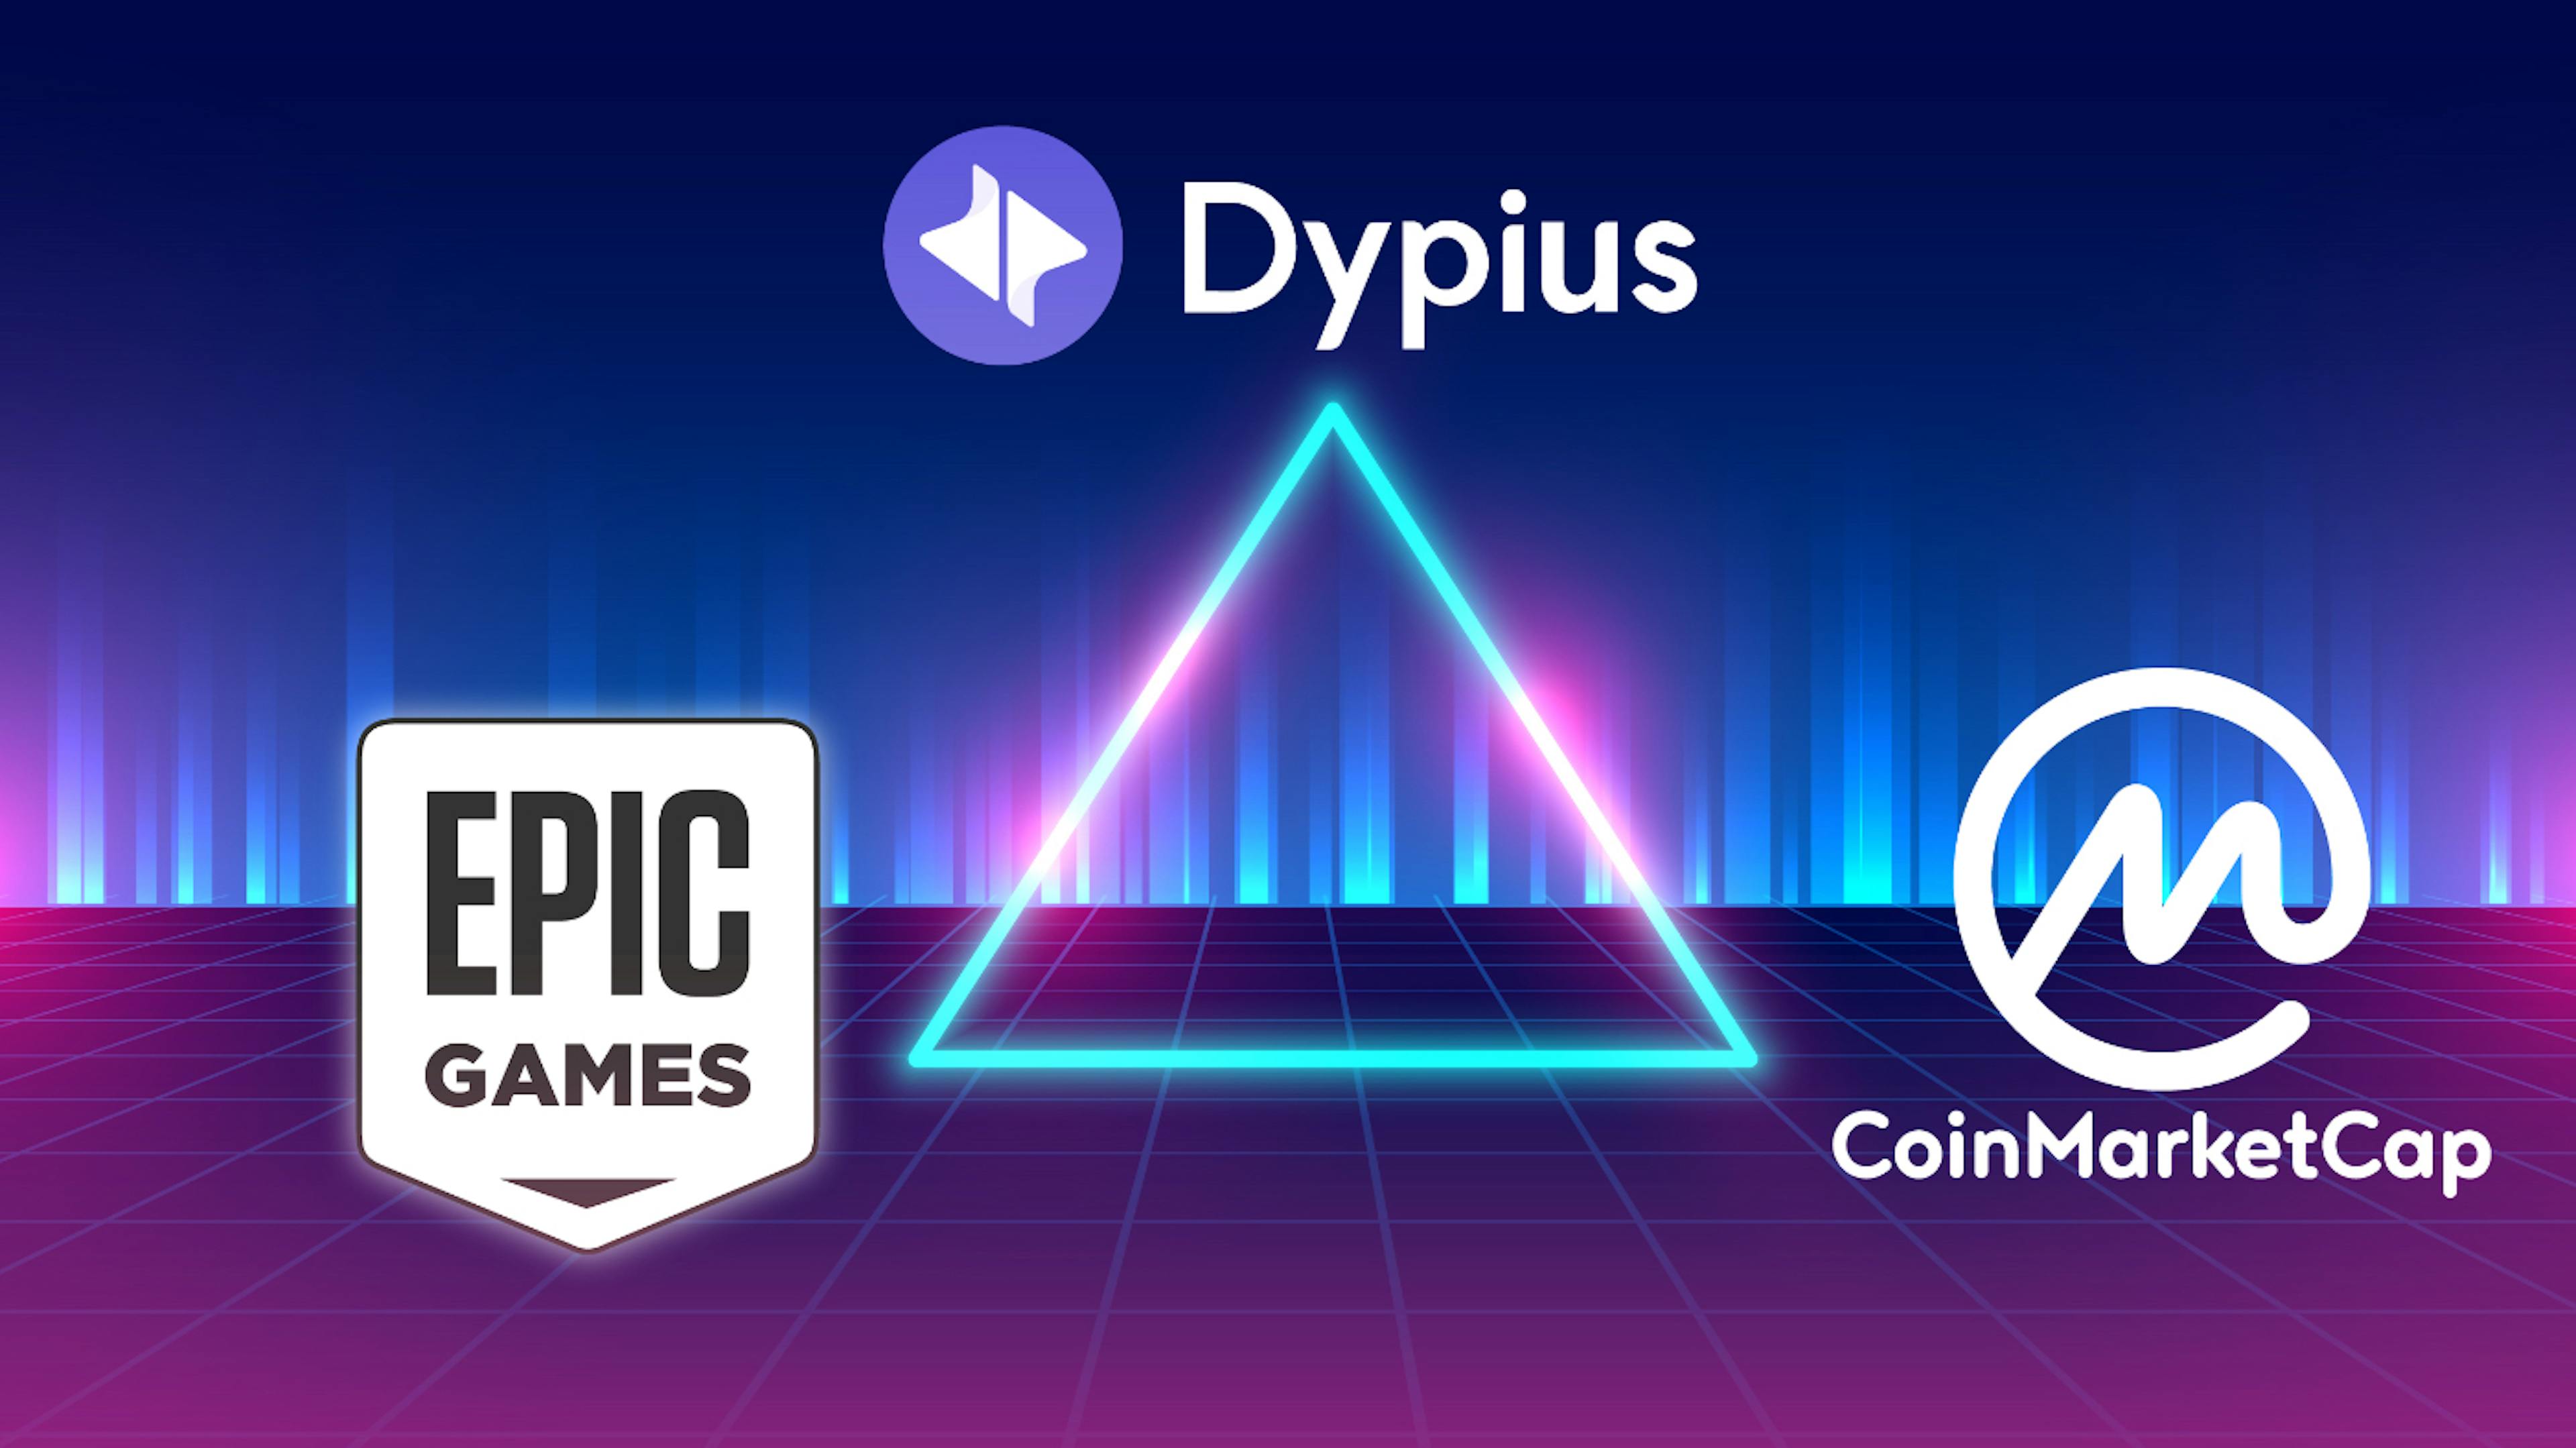 featured image - World of Dypians da la bienvenida a CoinMarketCap a su metaverso dinámico, ahora disponible en Epic Games Store